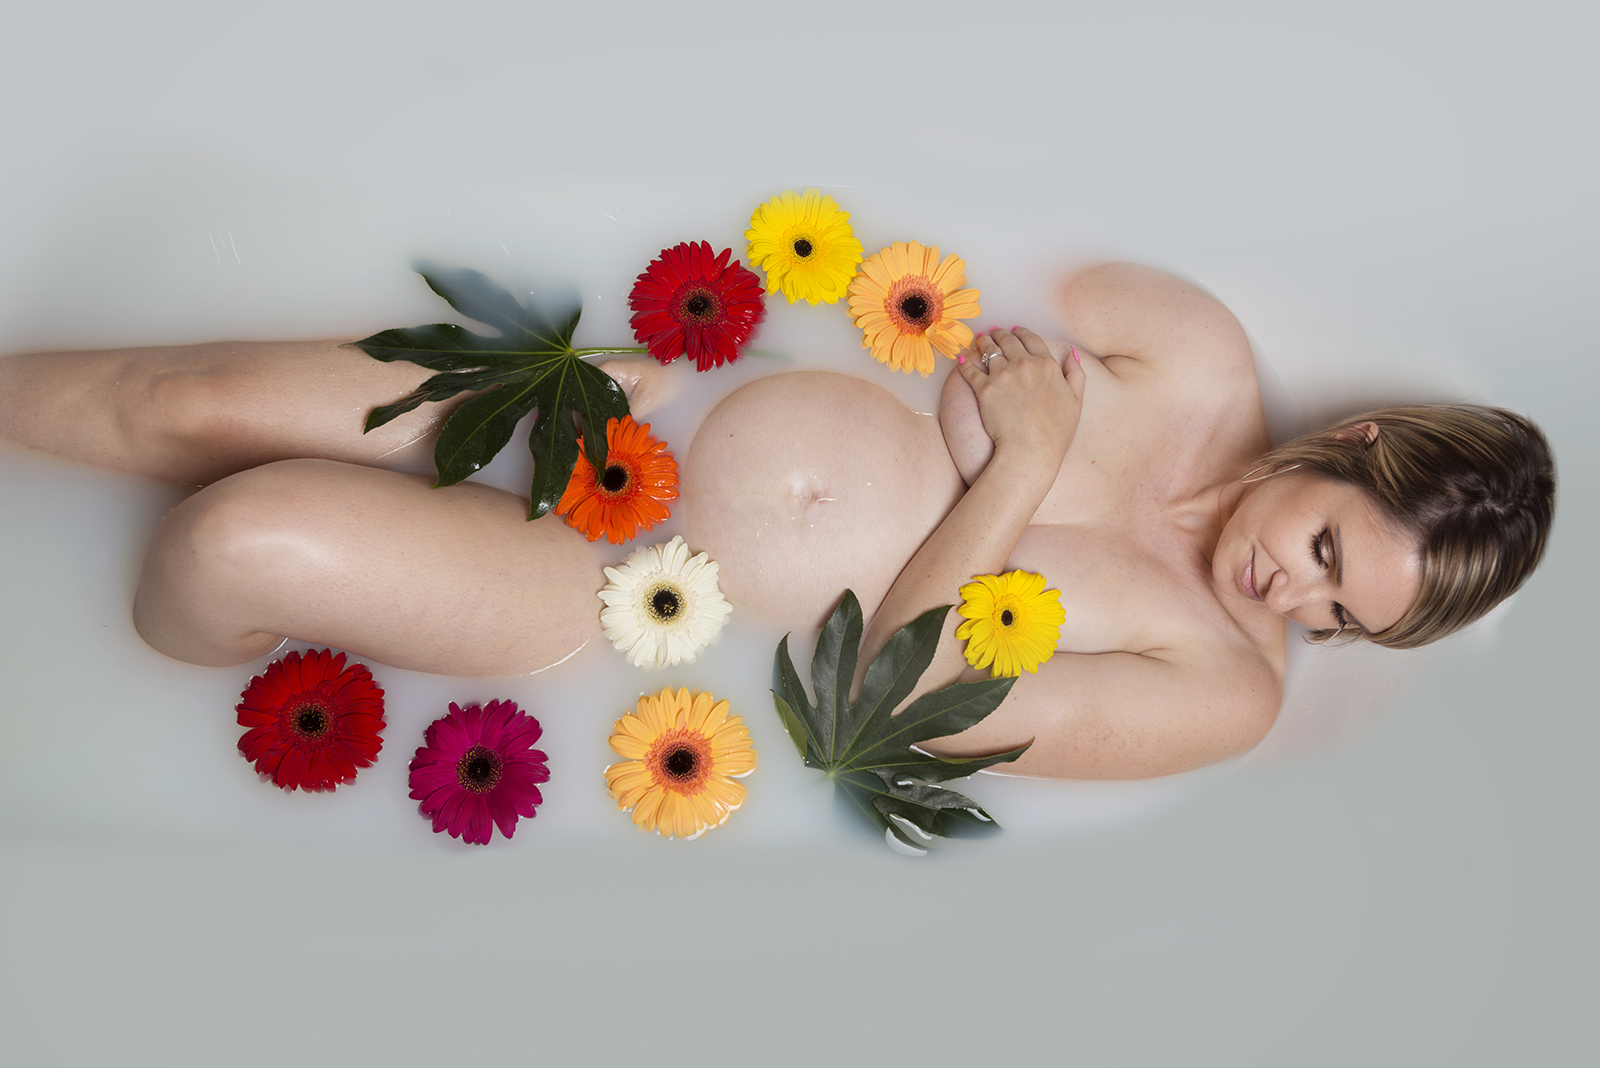 femme enceinte dans un bain de lait avec des fleurs